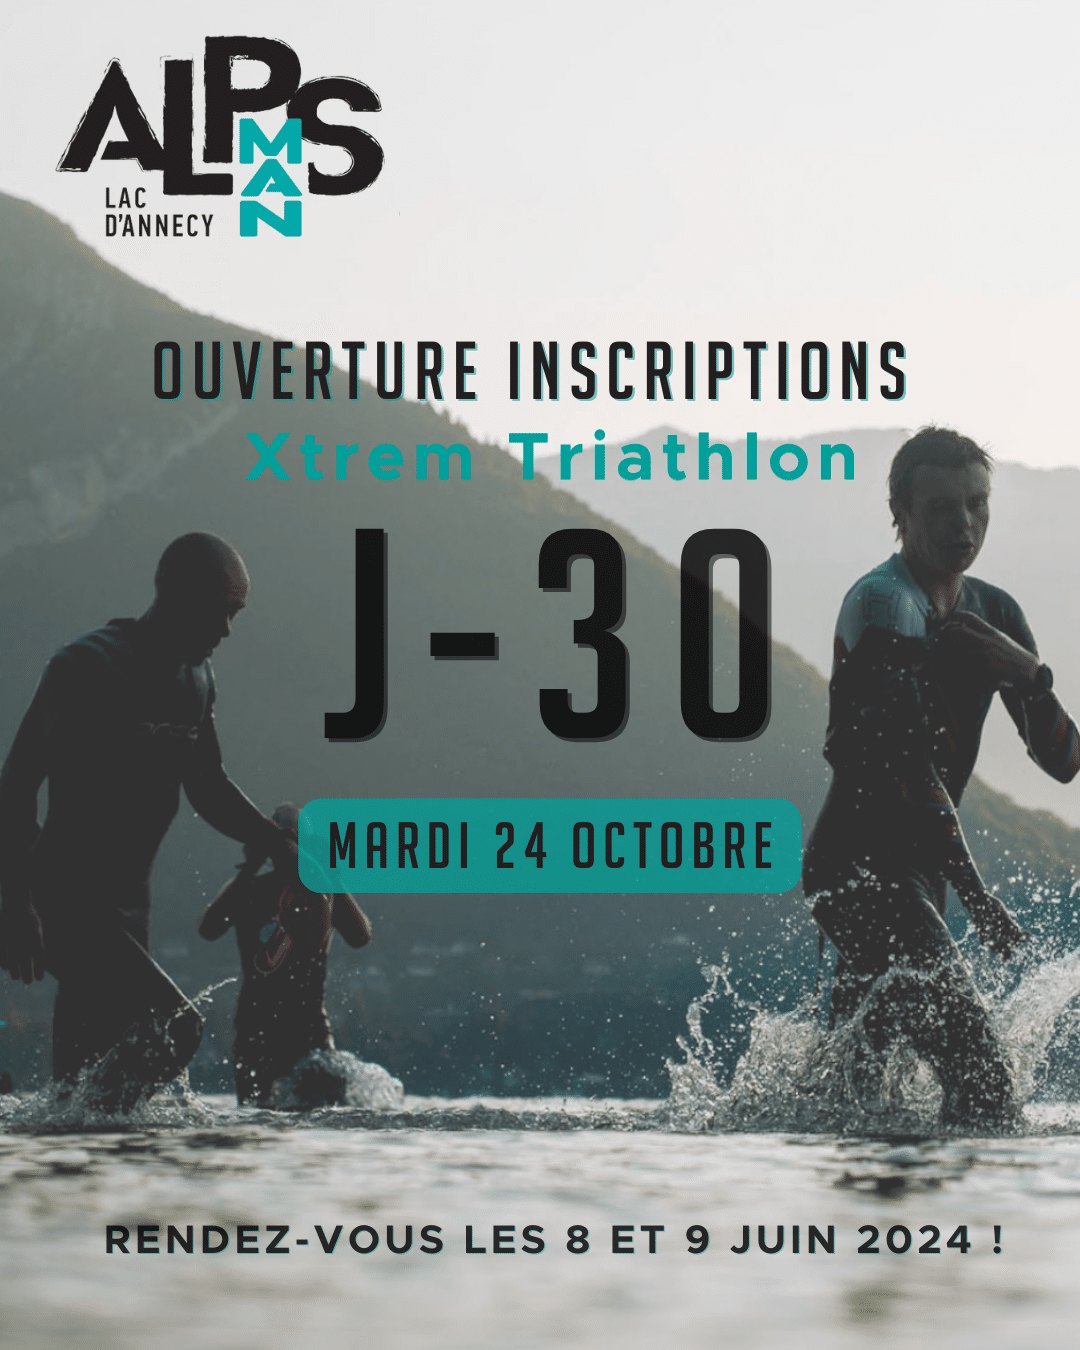 AlpsMan 2024 triathlon registration in Annecy